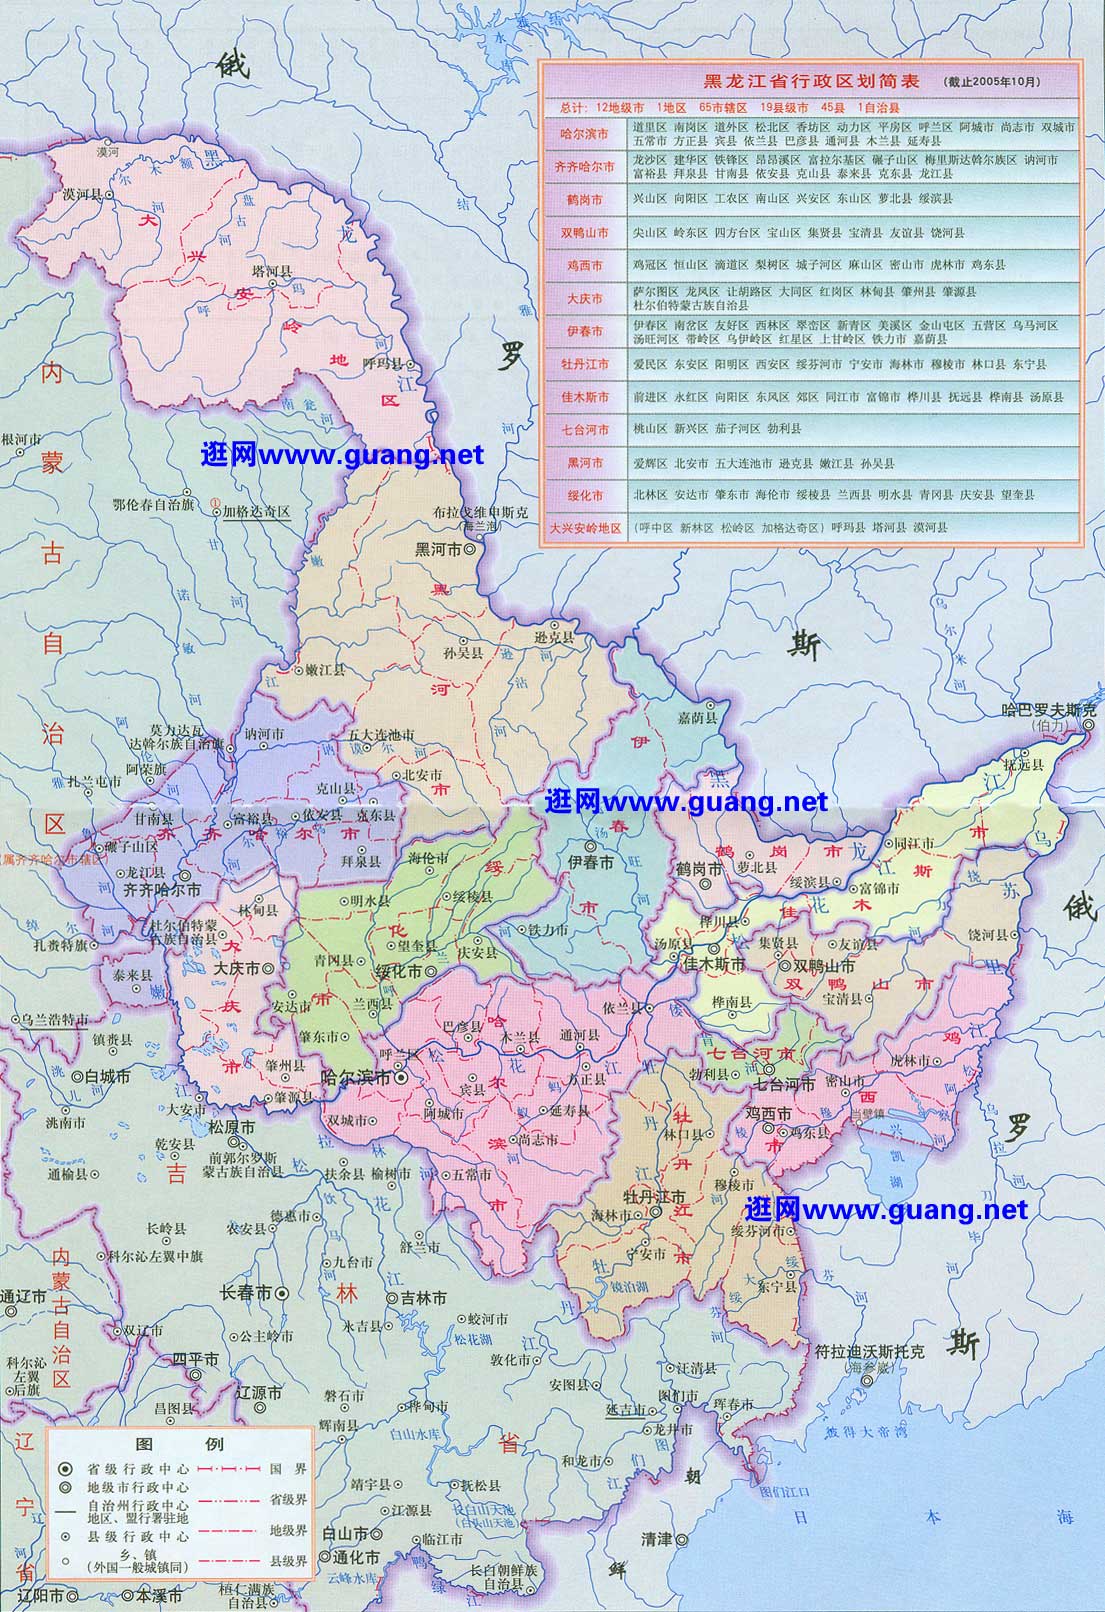 2021最新黑龙江地图二查询,黑龙江地图二高清版下载,黑龙江地图二中文